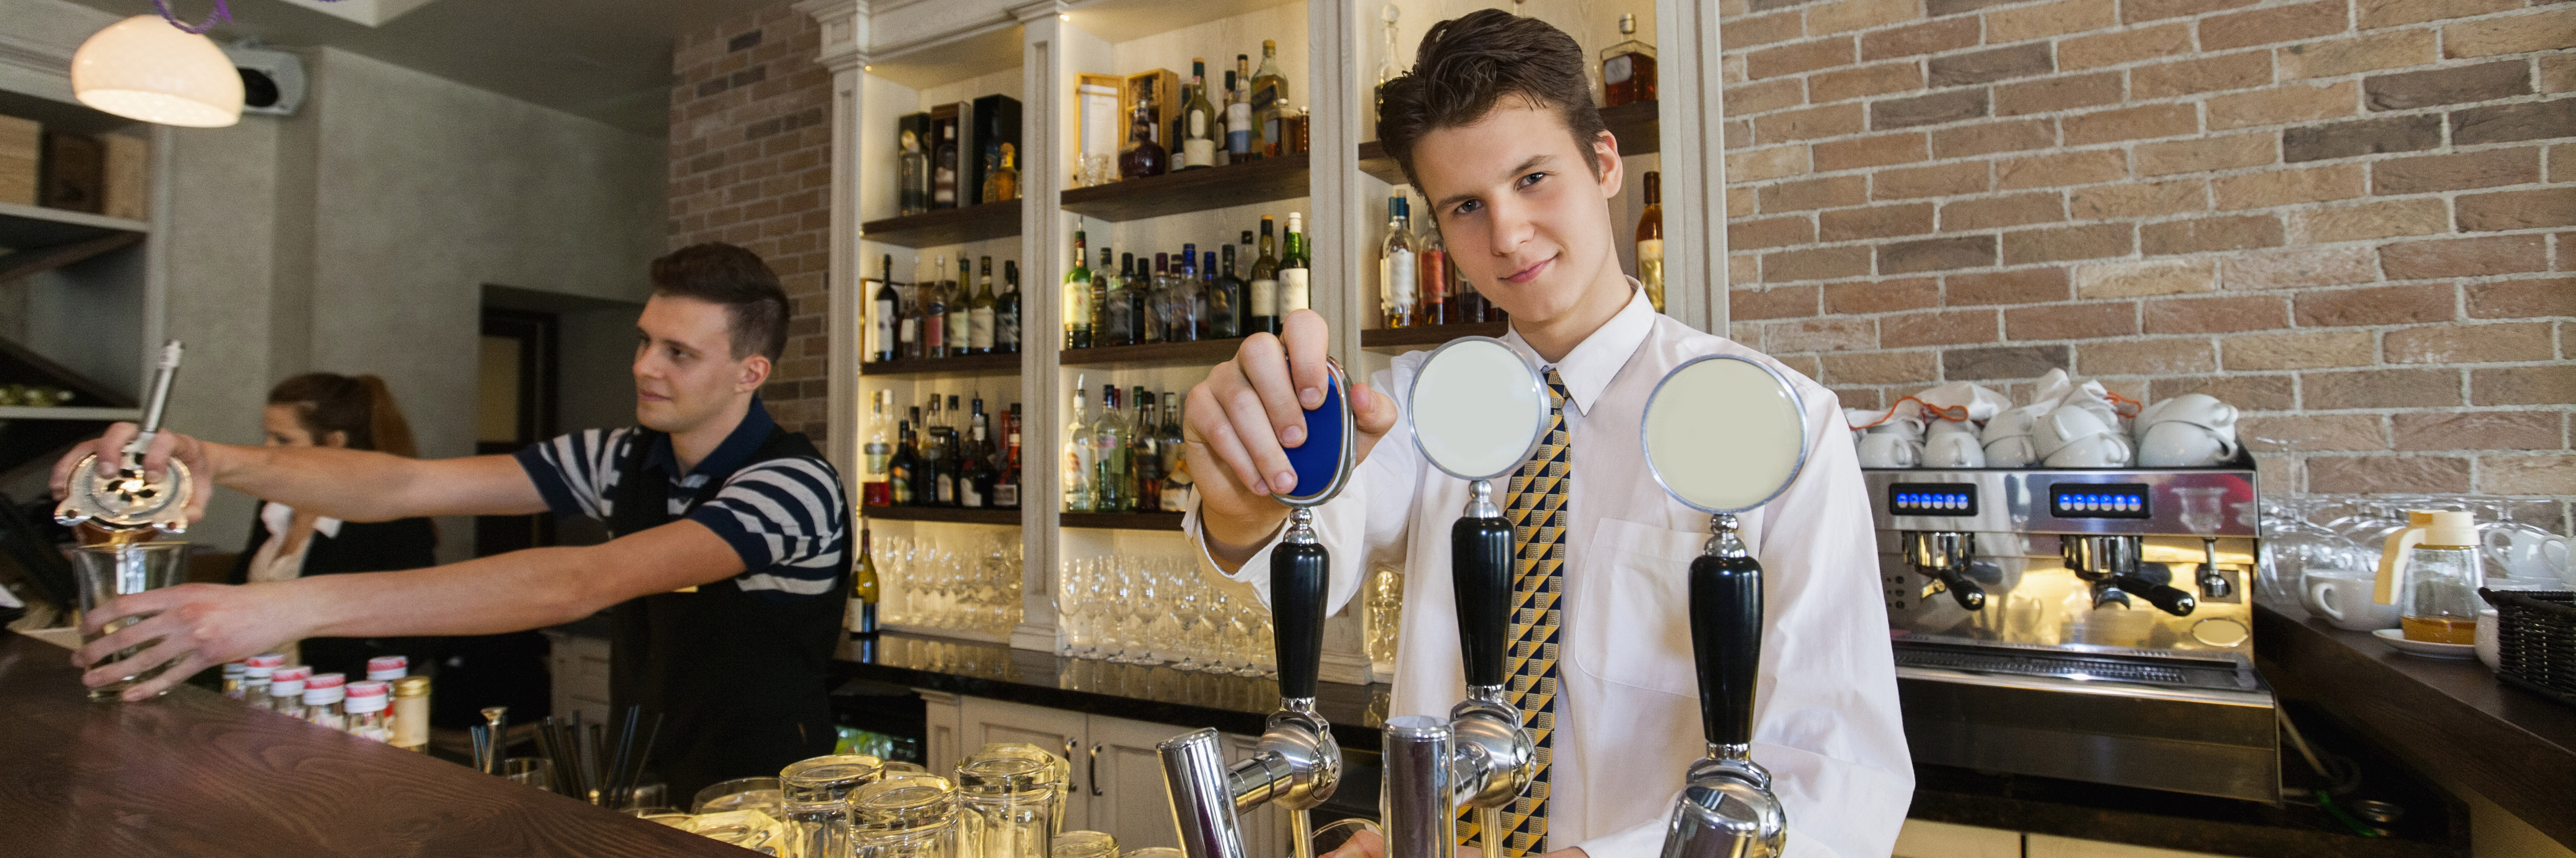 Apprentice serving a drink at a bar